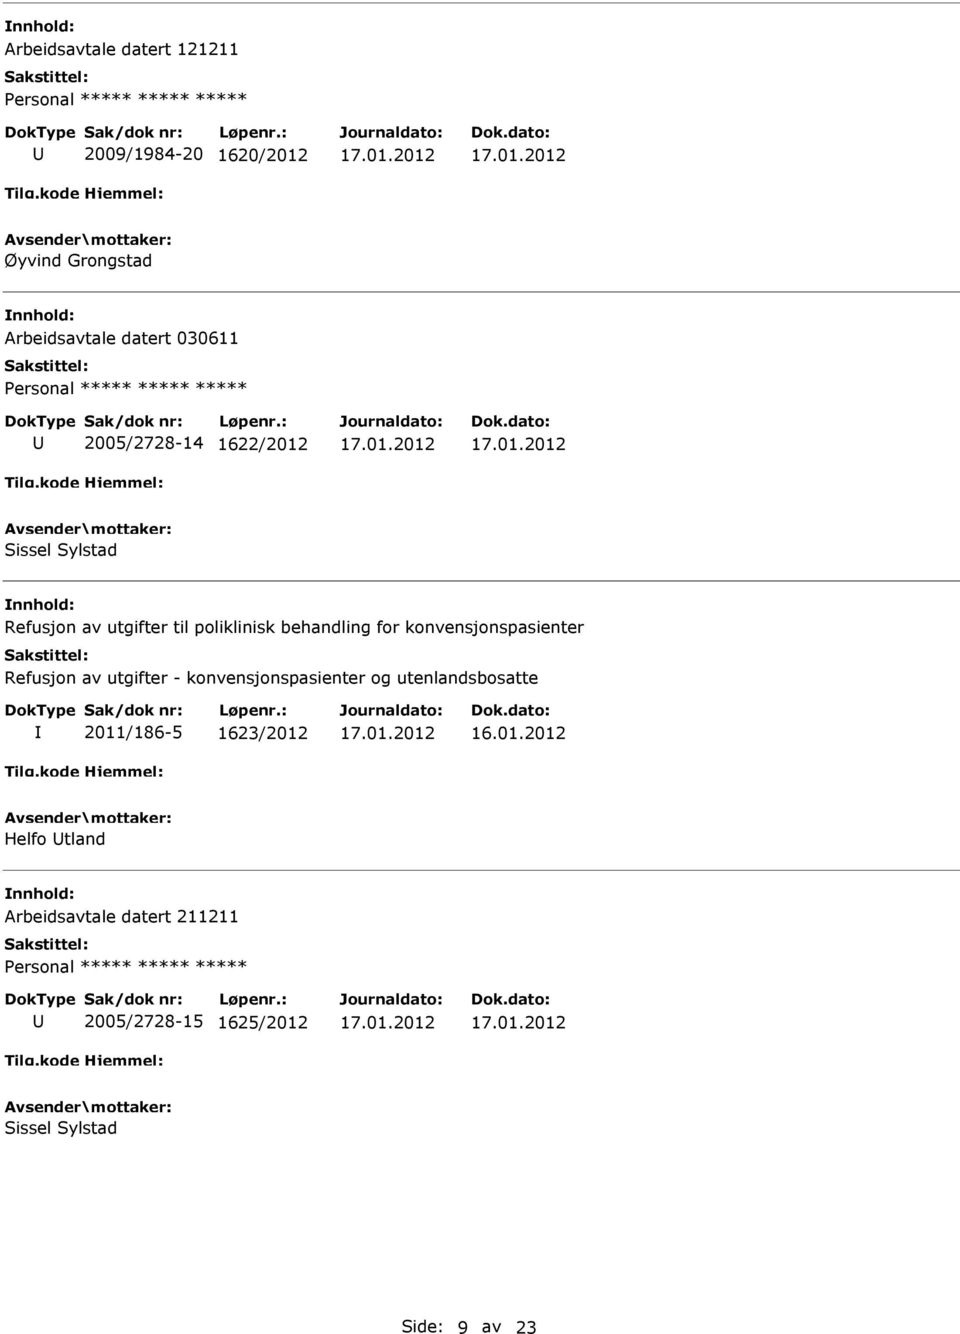 konvensjonspasienter Refusjon av utgifter - konvensjonspasienter og utenlandsbosatte 2011/186-5